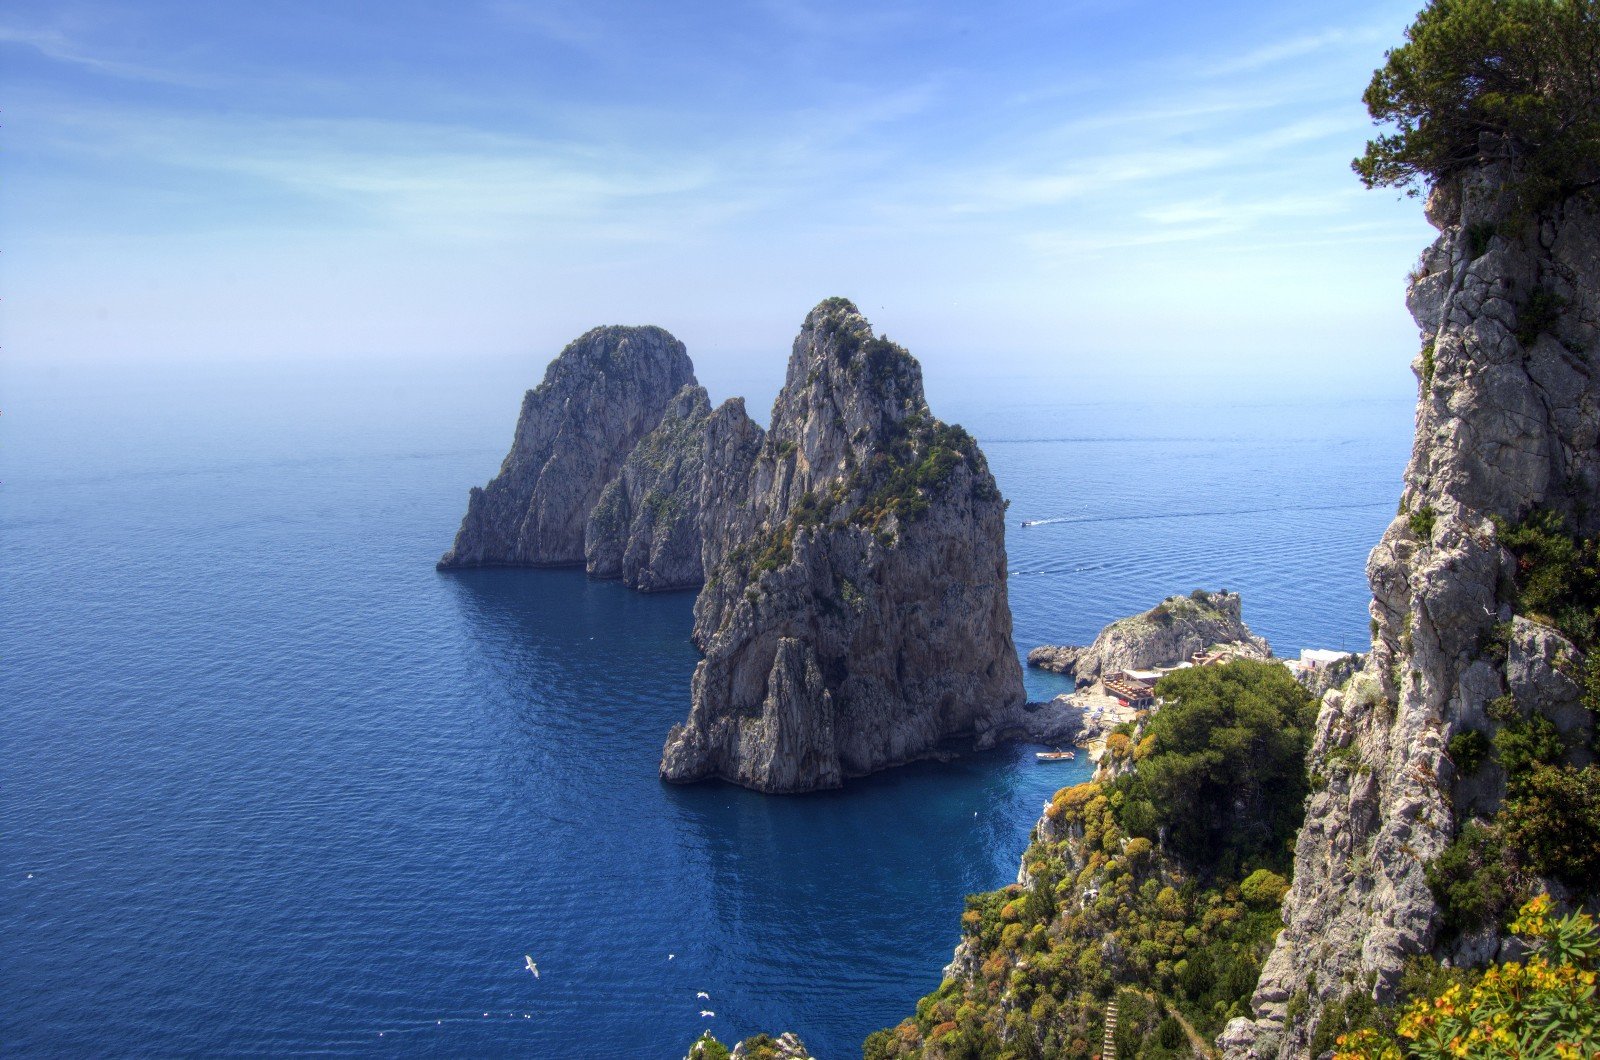 Capri Cruise Excursion